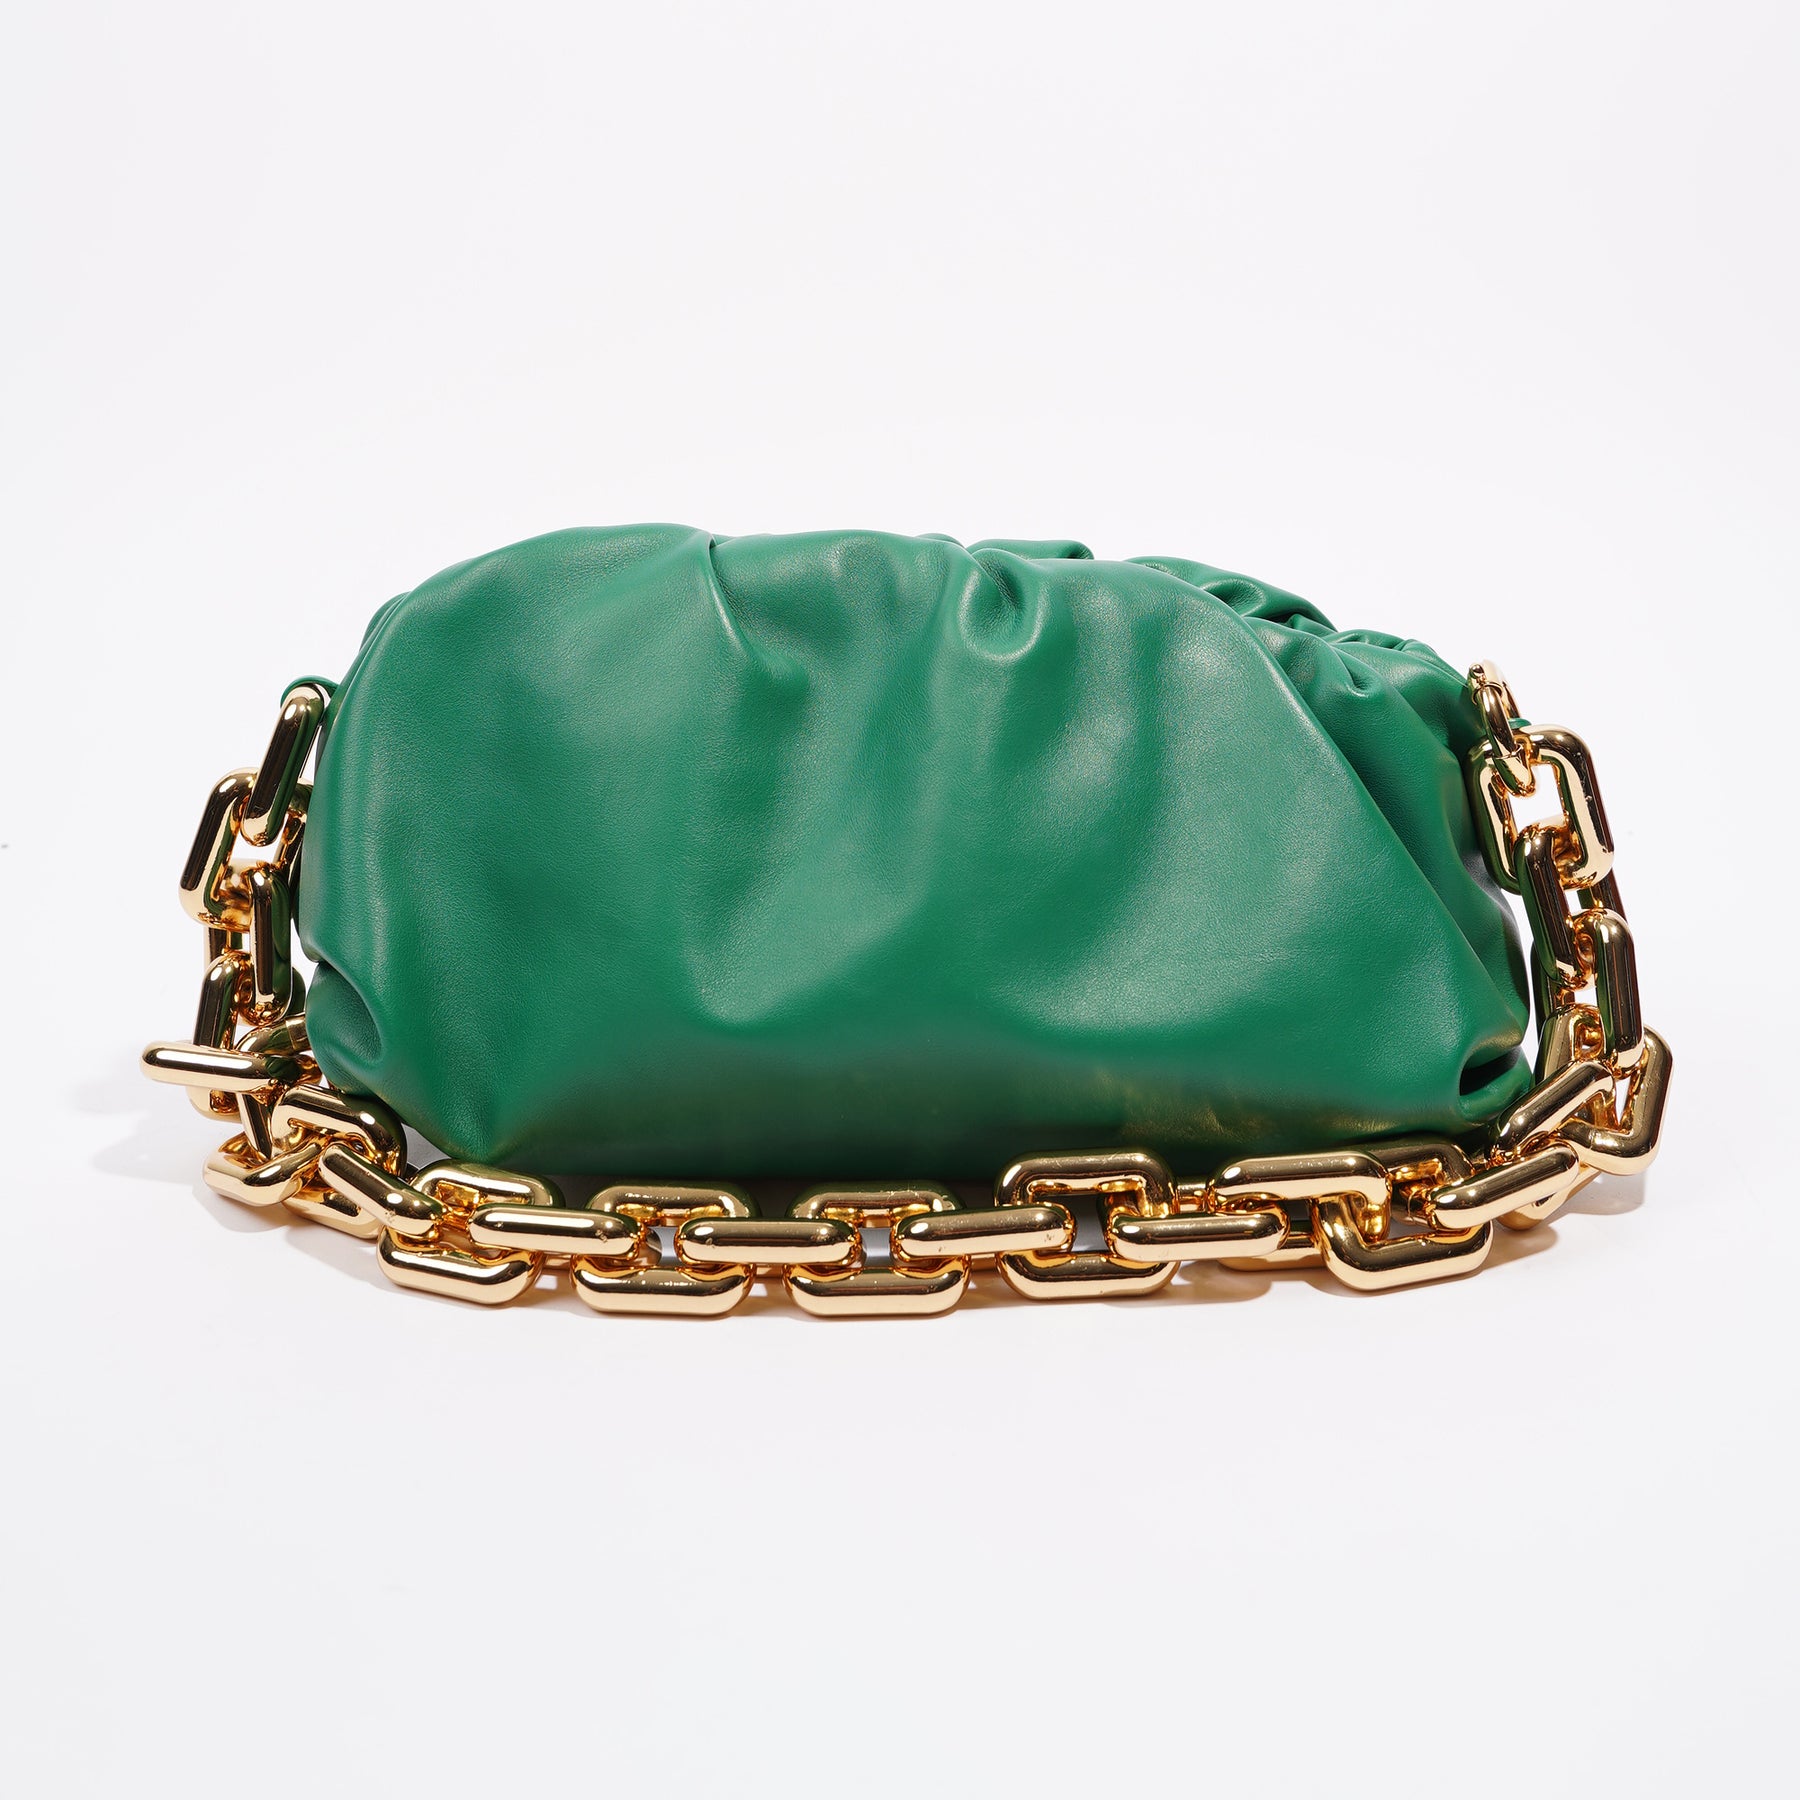 Dior chain pouch it is!!! : r/handbags